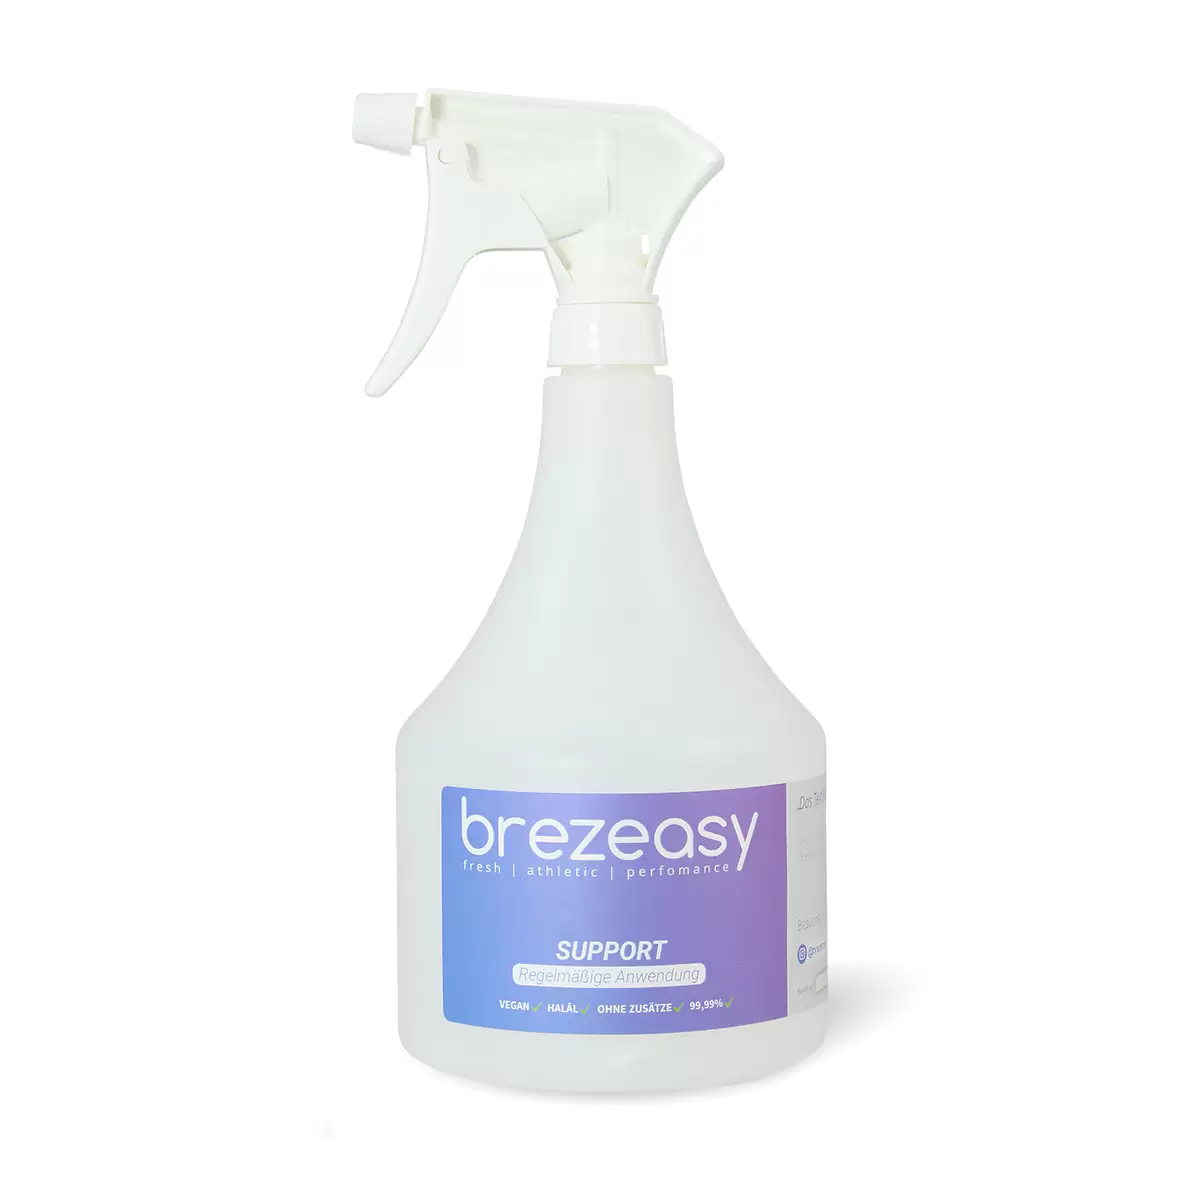 brezeasy support sprayer bottle